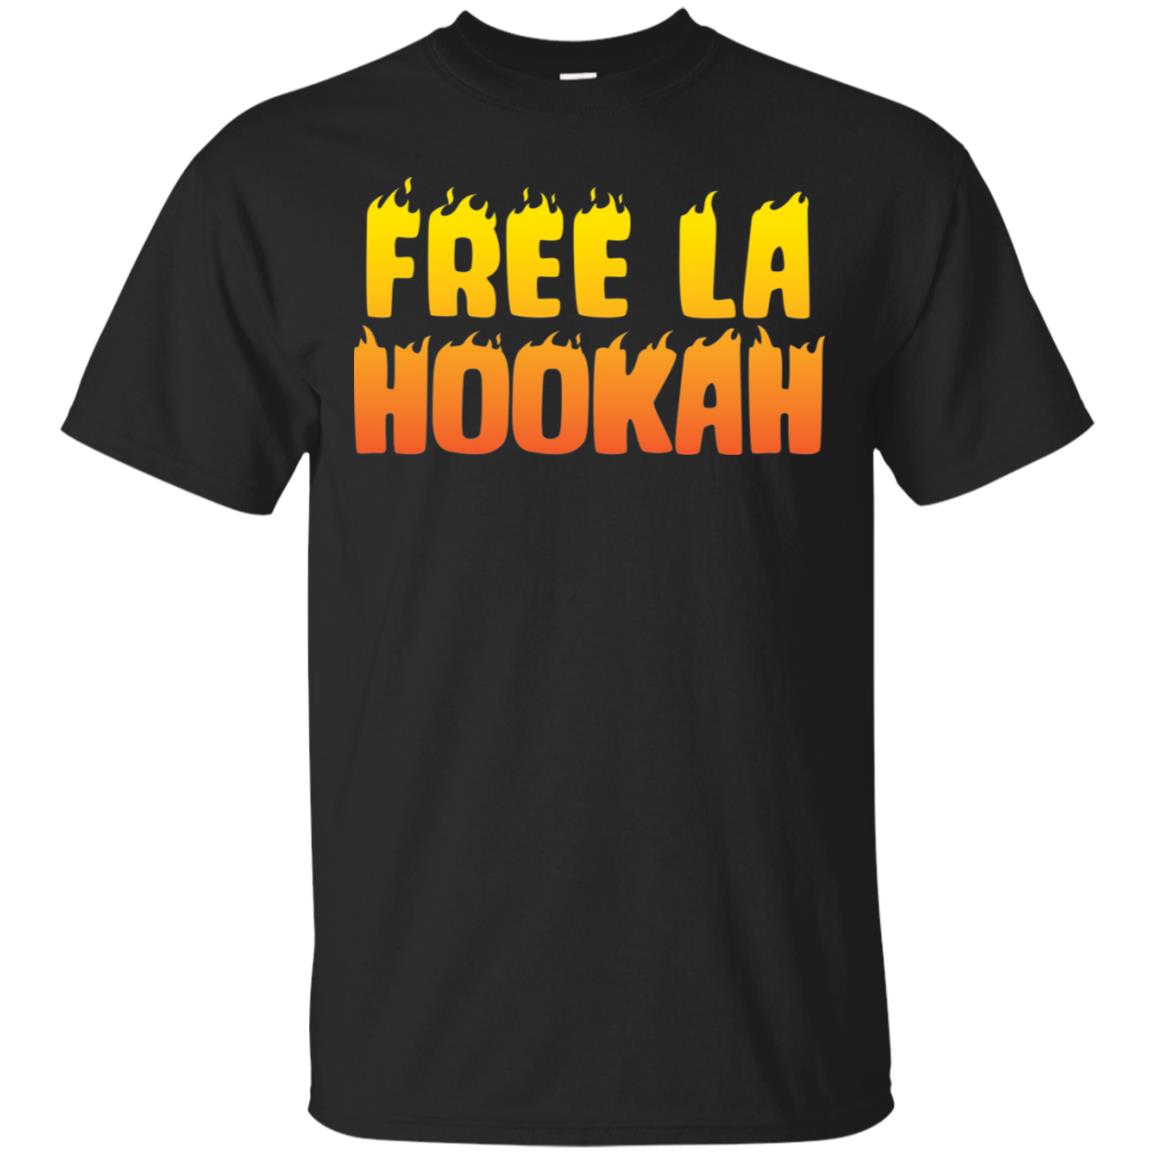 Free La Hookah Shirt, Hoodie